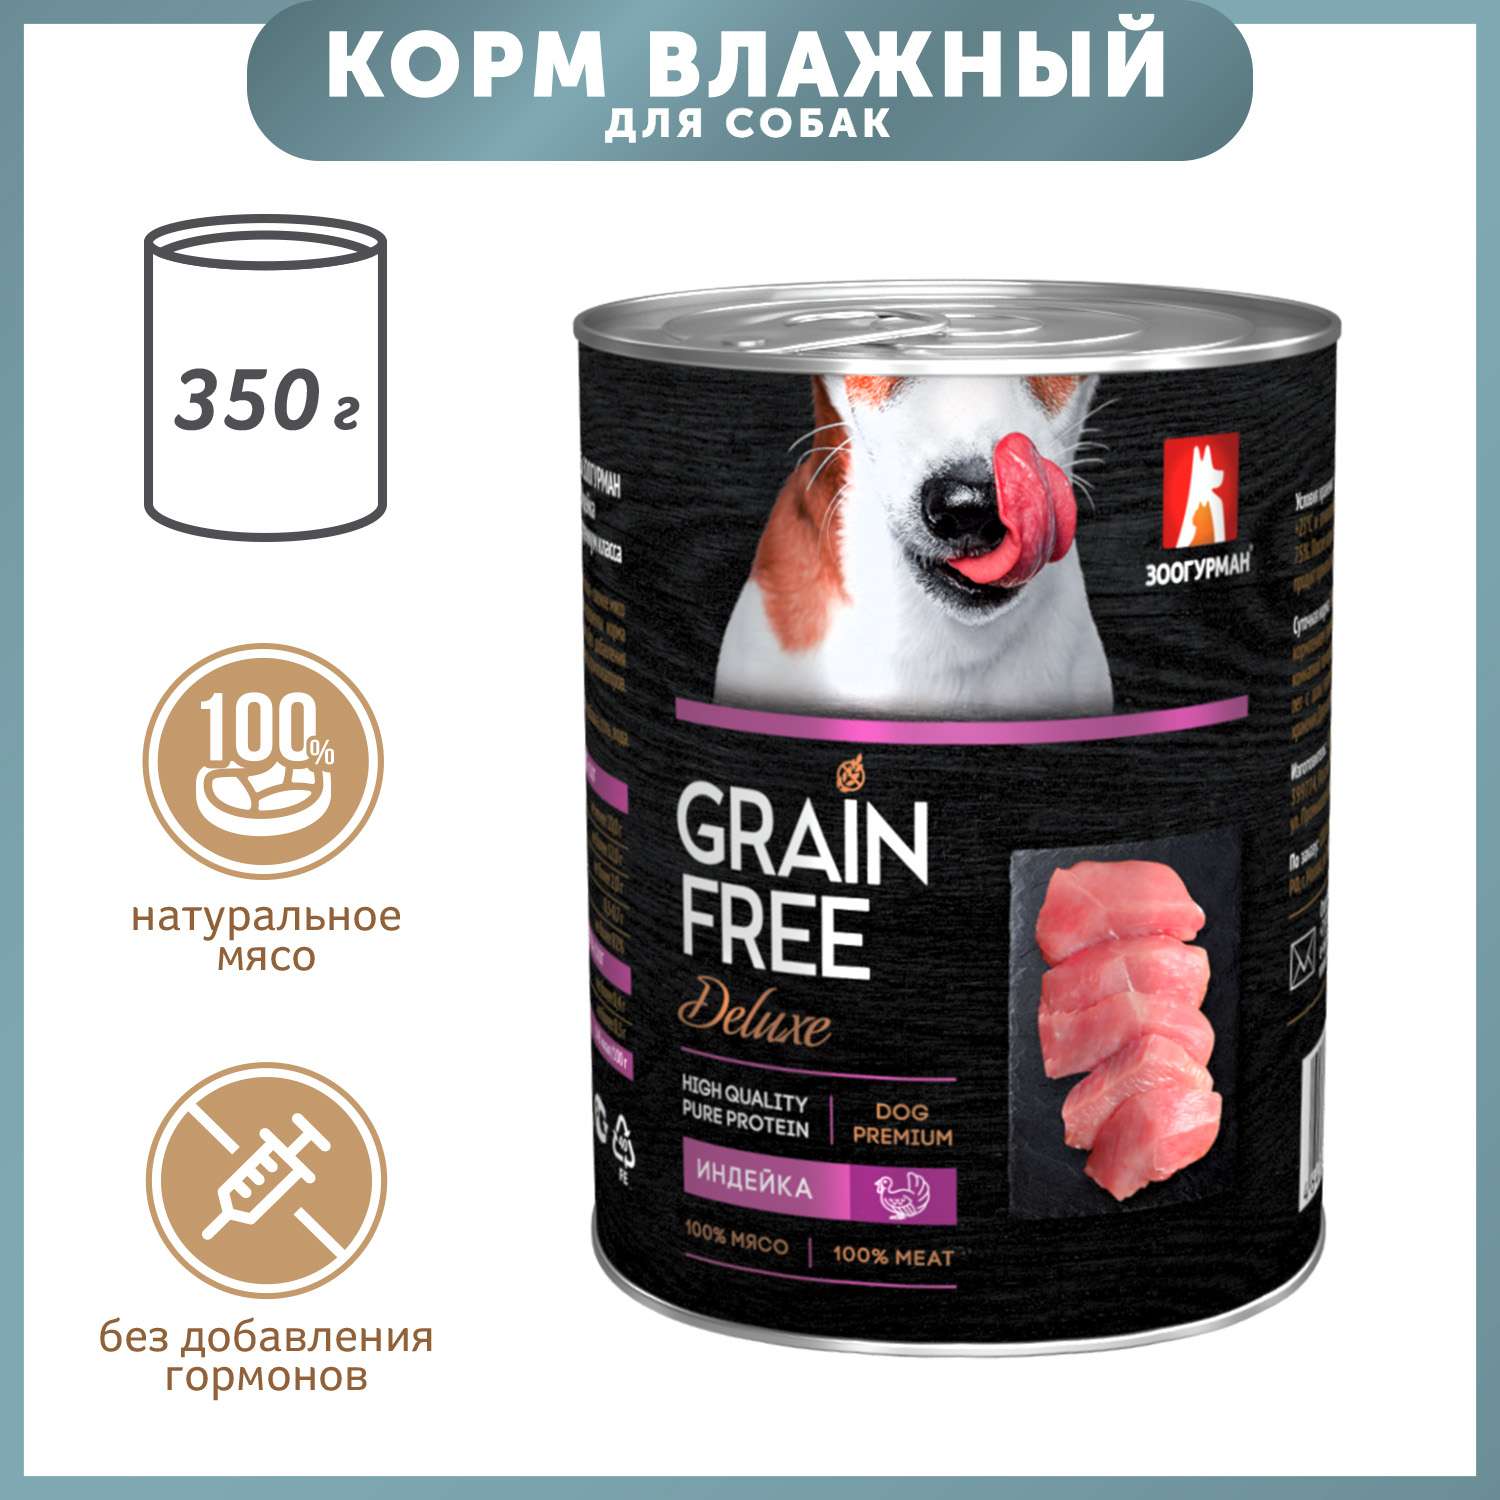 Корм для собак Зоогурман 350г Grain free индейка консервированный - фото 1